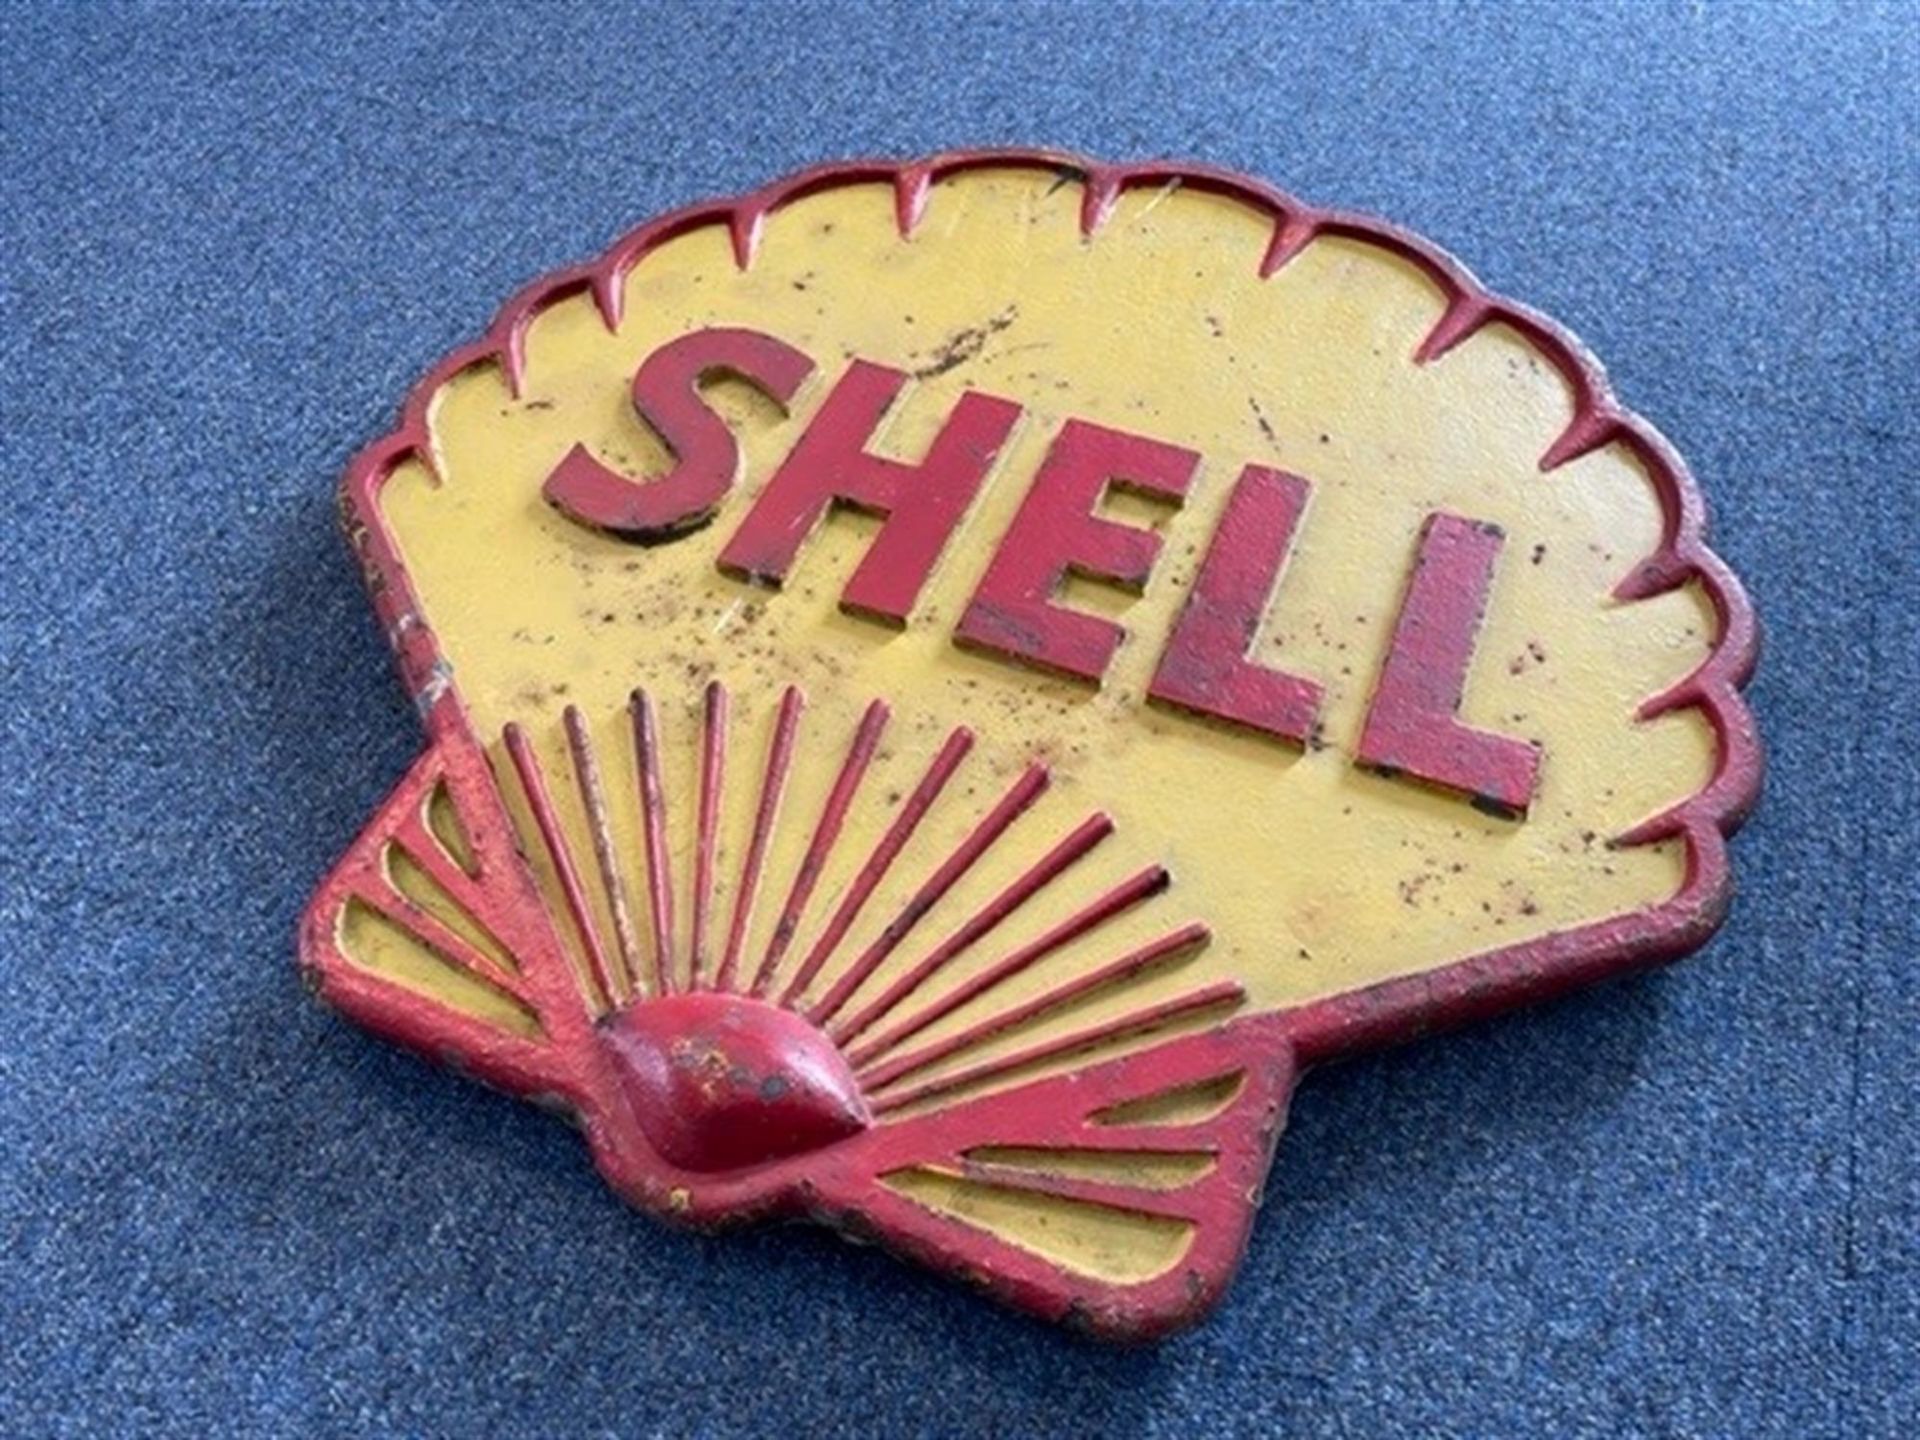 Rare, Original, Substantial Cast Metal Shell Sign c1930s - Image 2 of 7